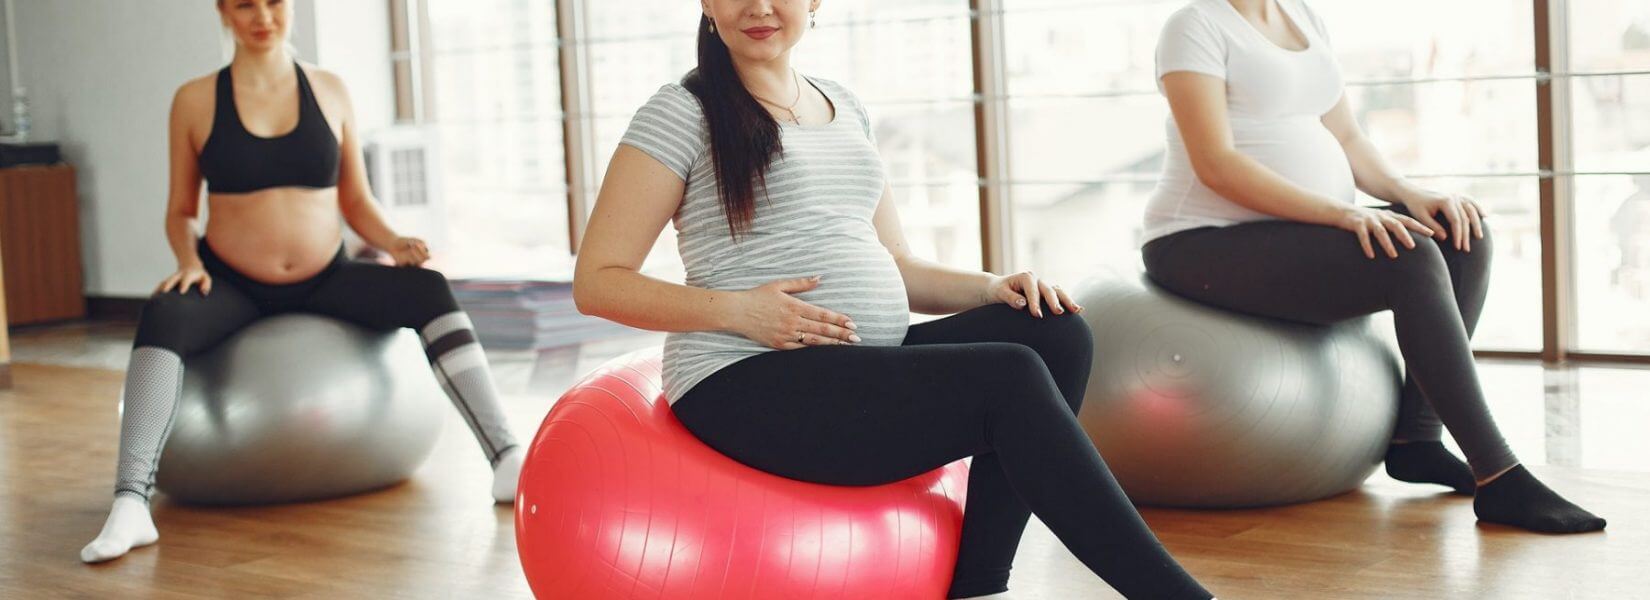 Εγκυμοσύνη και γυμναστική